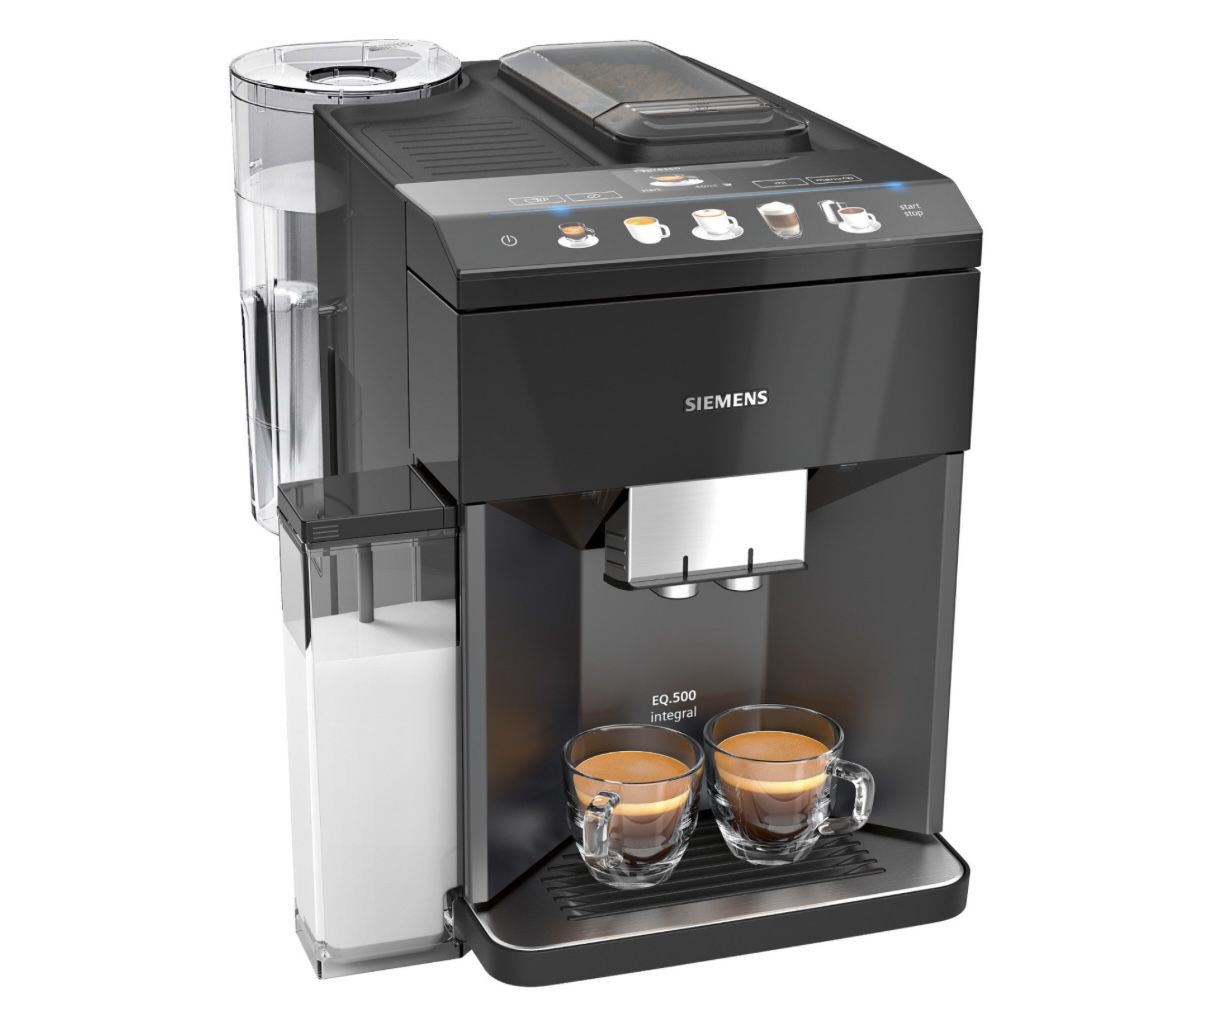 SIEMENS TQ505D09 EQ.500 integral Kaffeevollautomat in Schwarz ab 505,99€ (statt 585€)